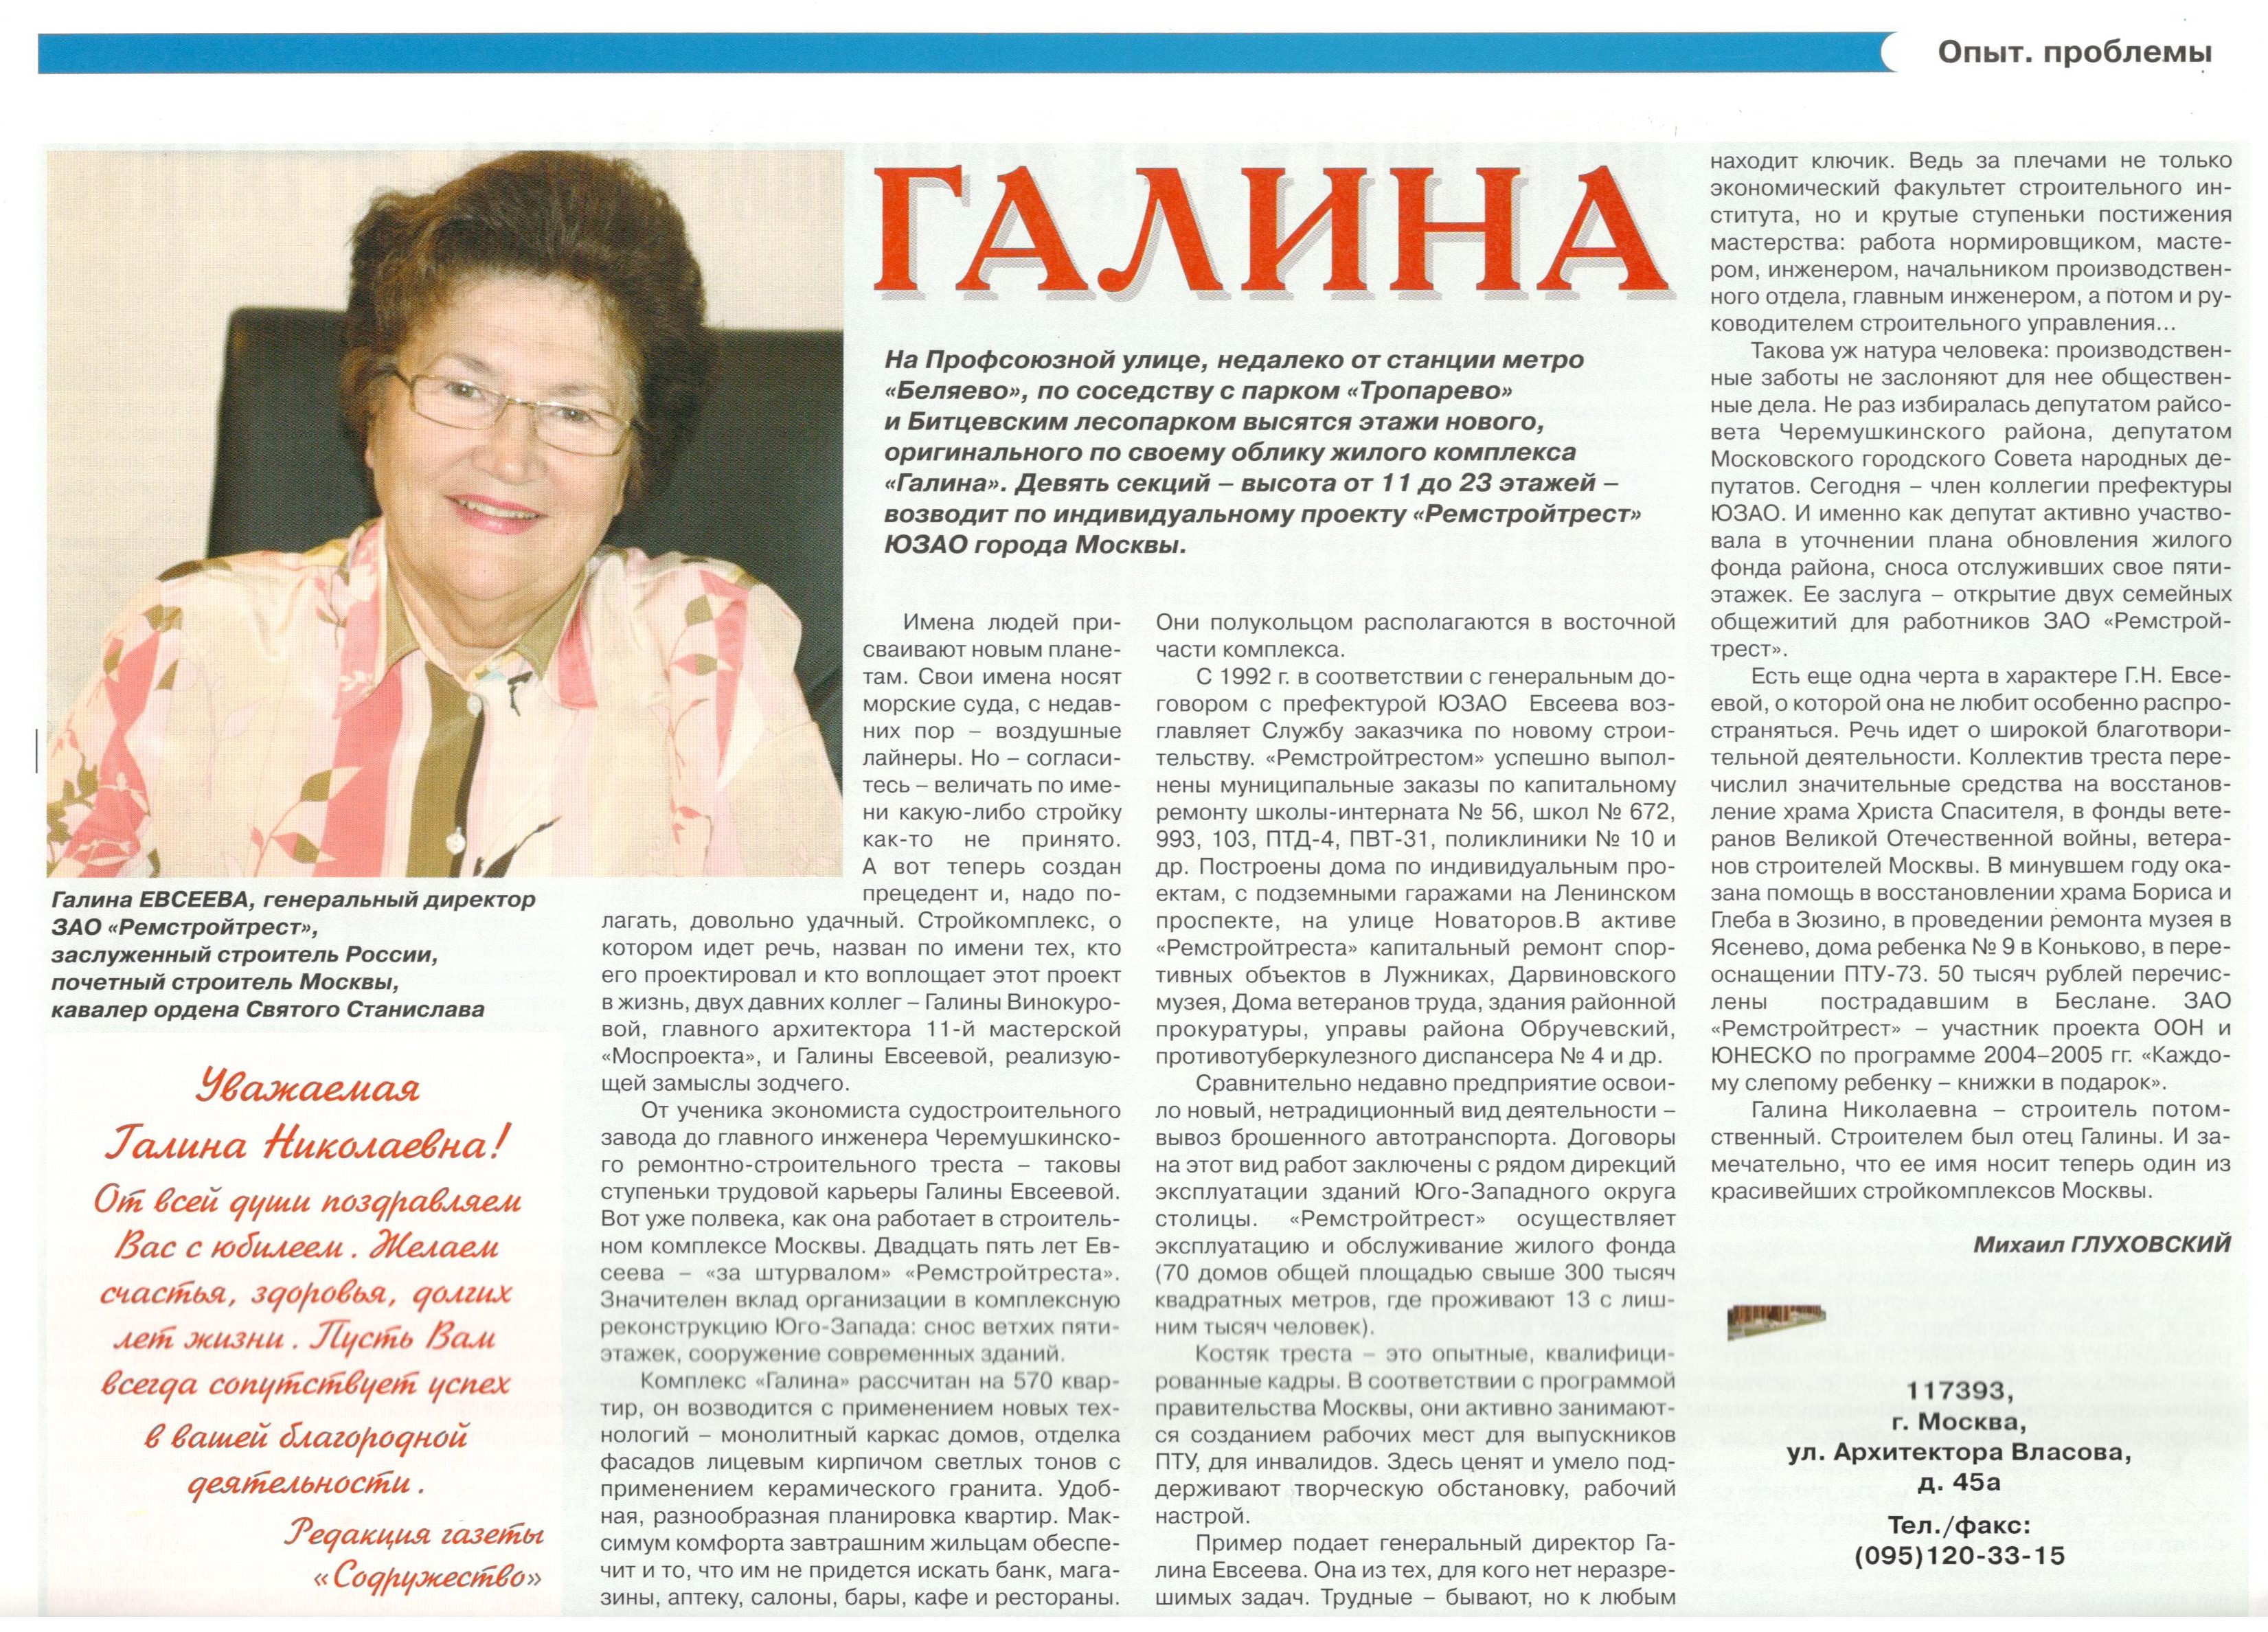 Газета Содружество №26 (ноябрь 2005)